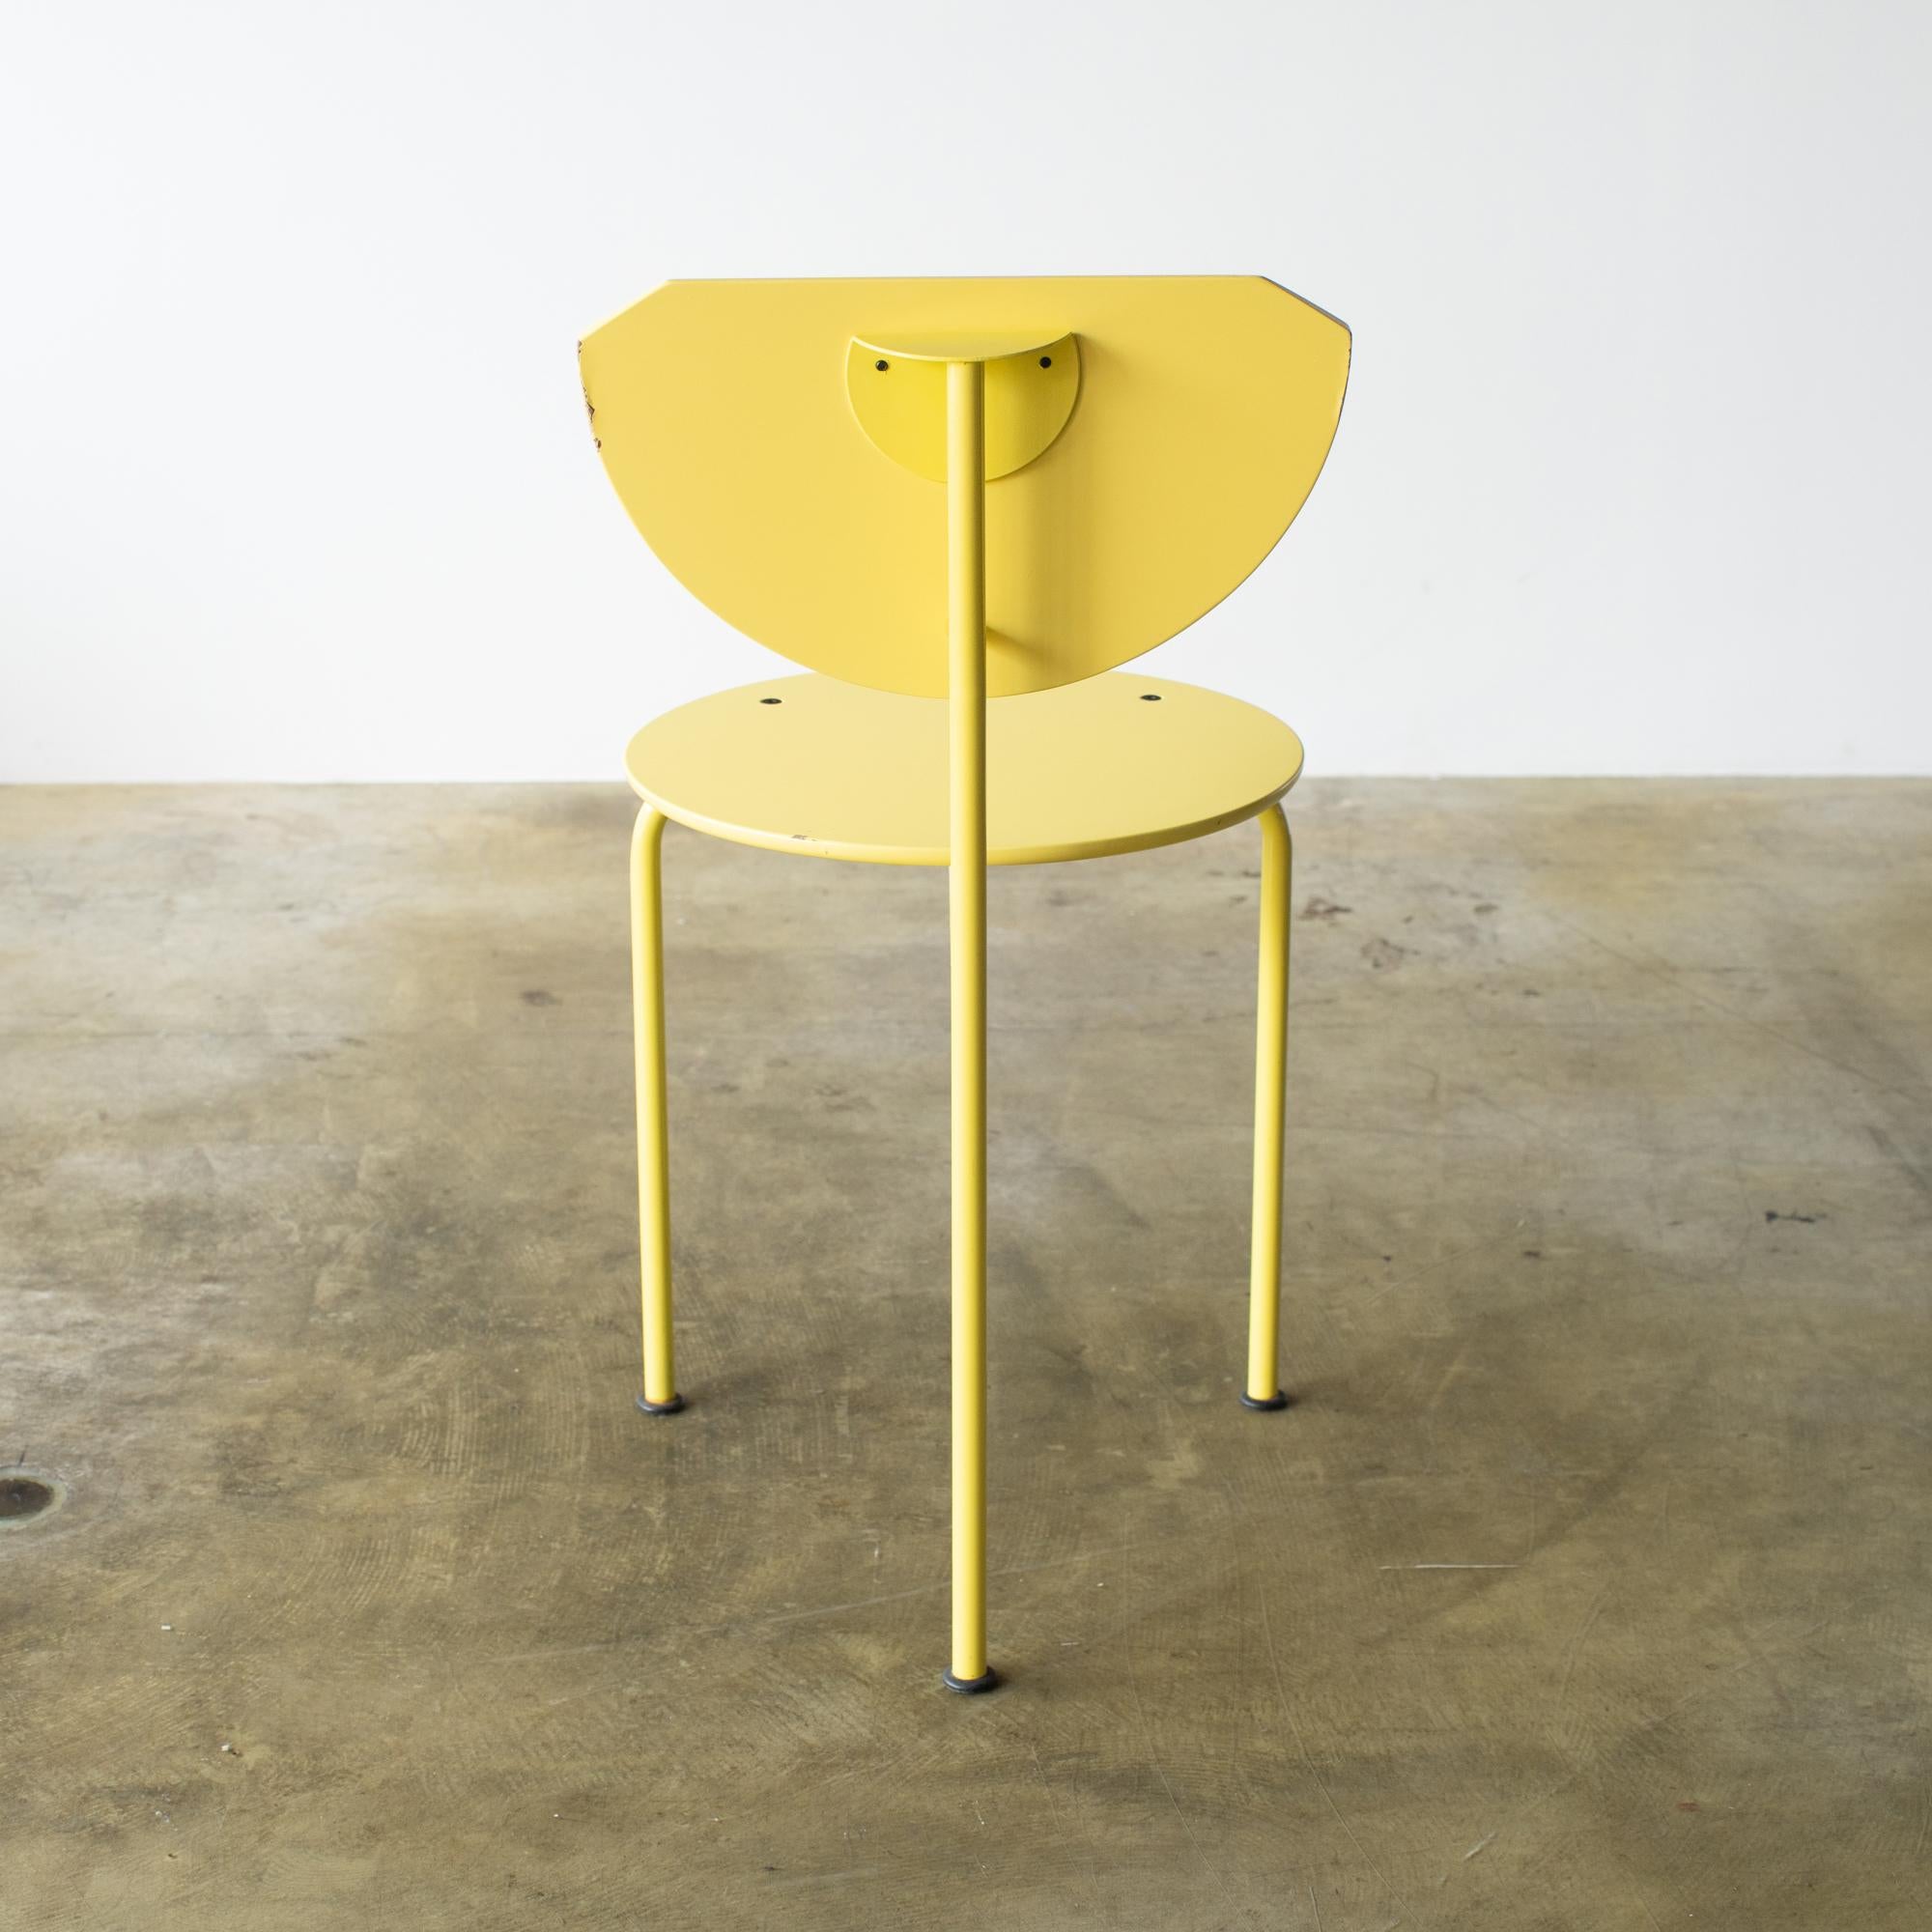 Italian Alien Chair Carlo Forcolini 1980s Design For Sale